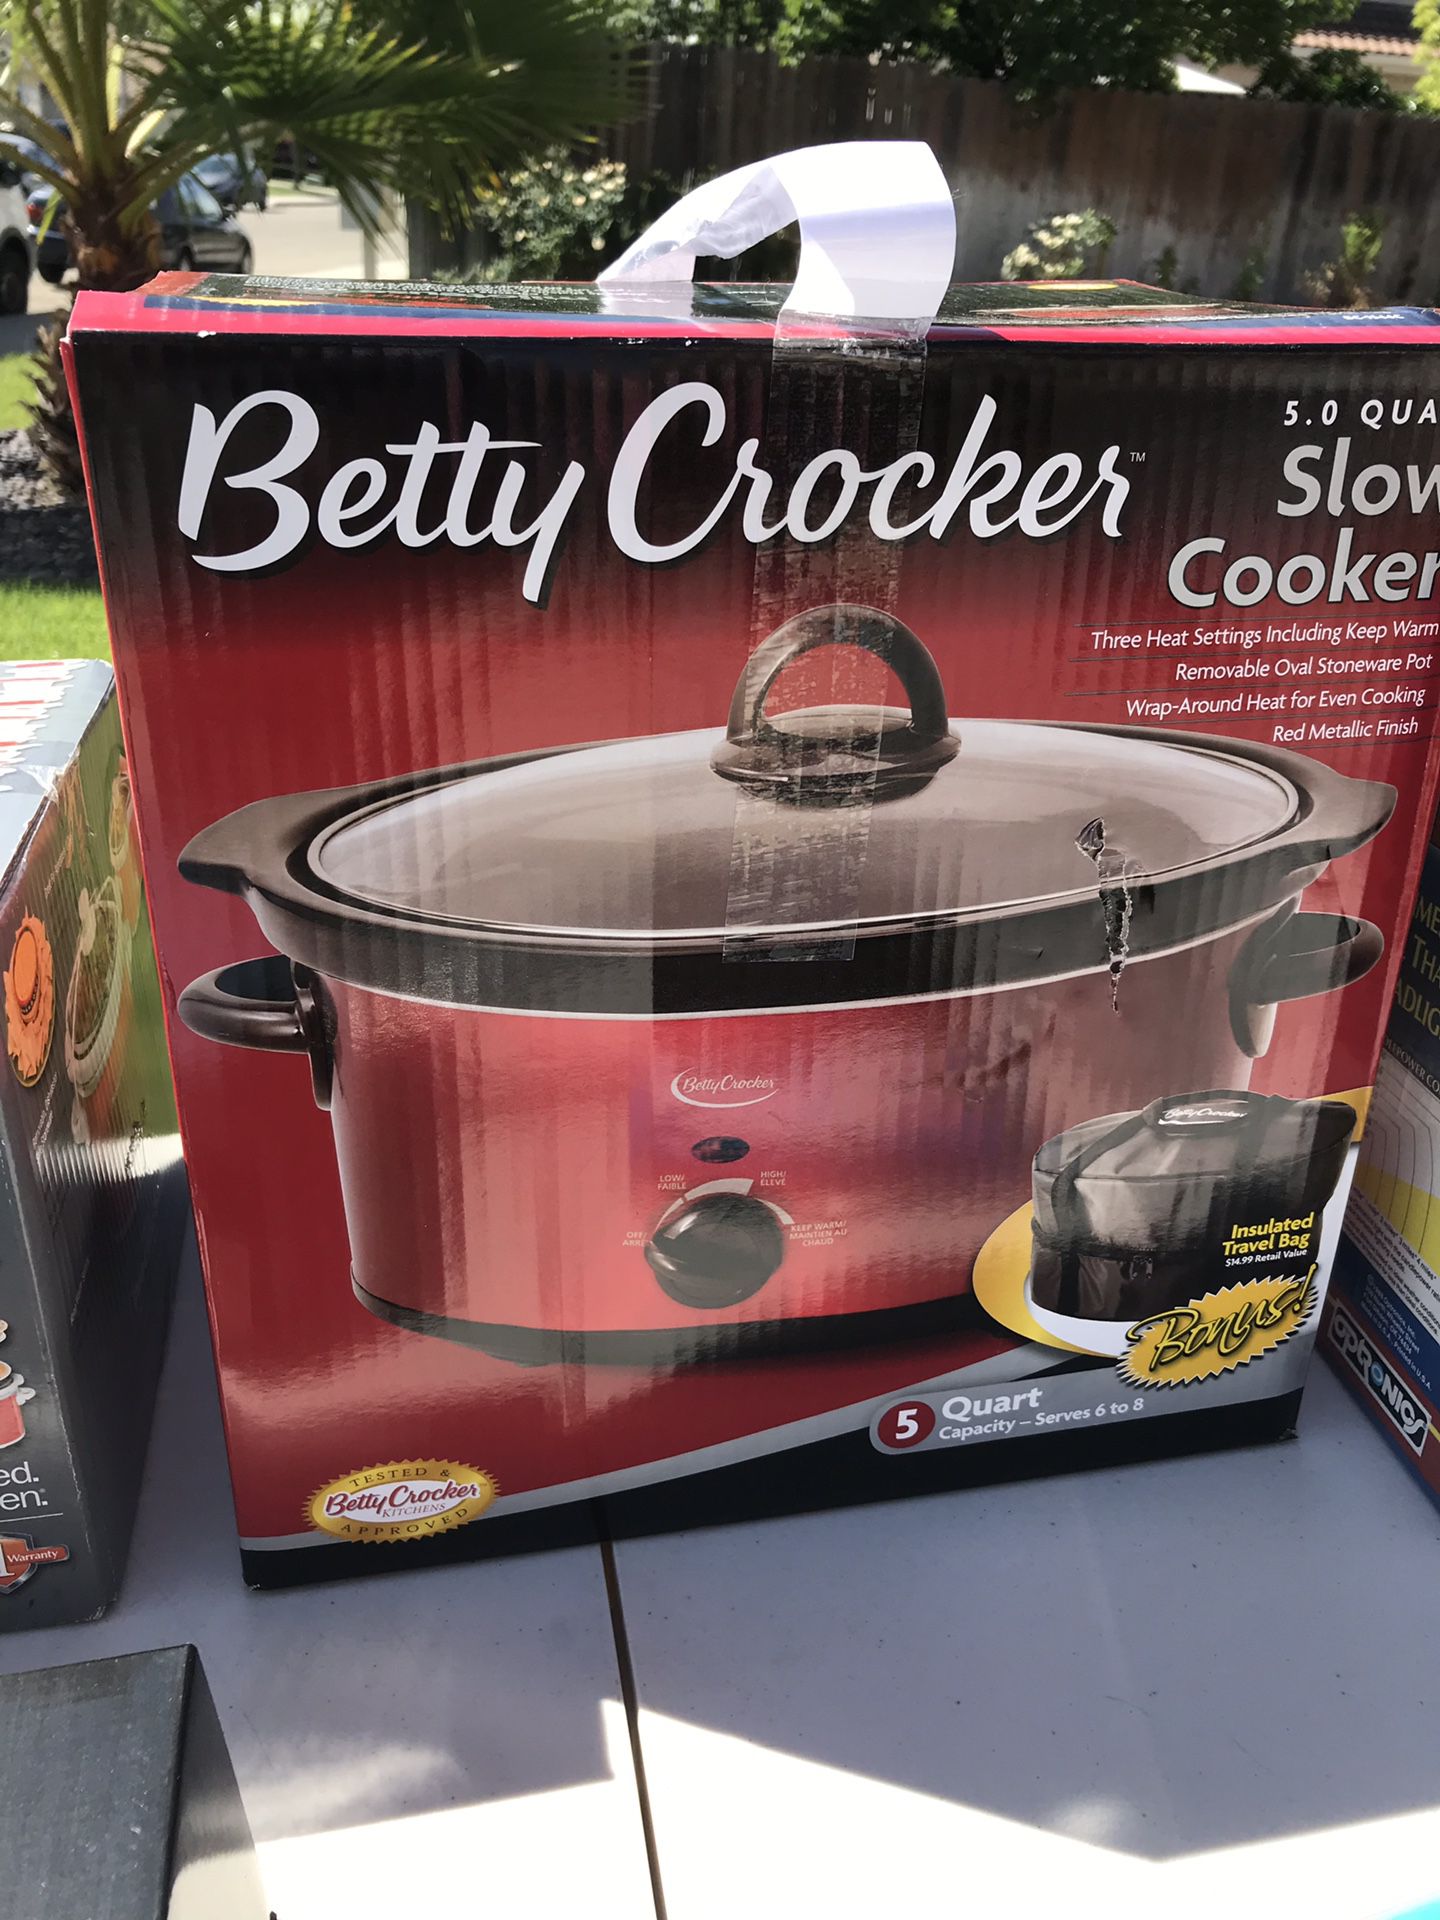 Betty Crocker 5qt slow cooker